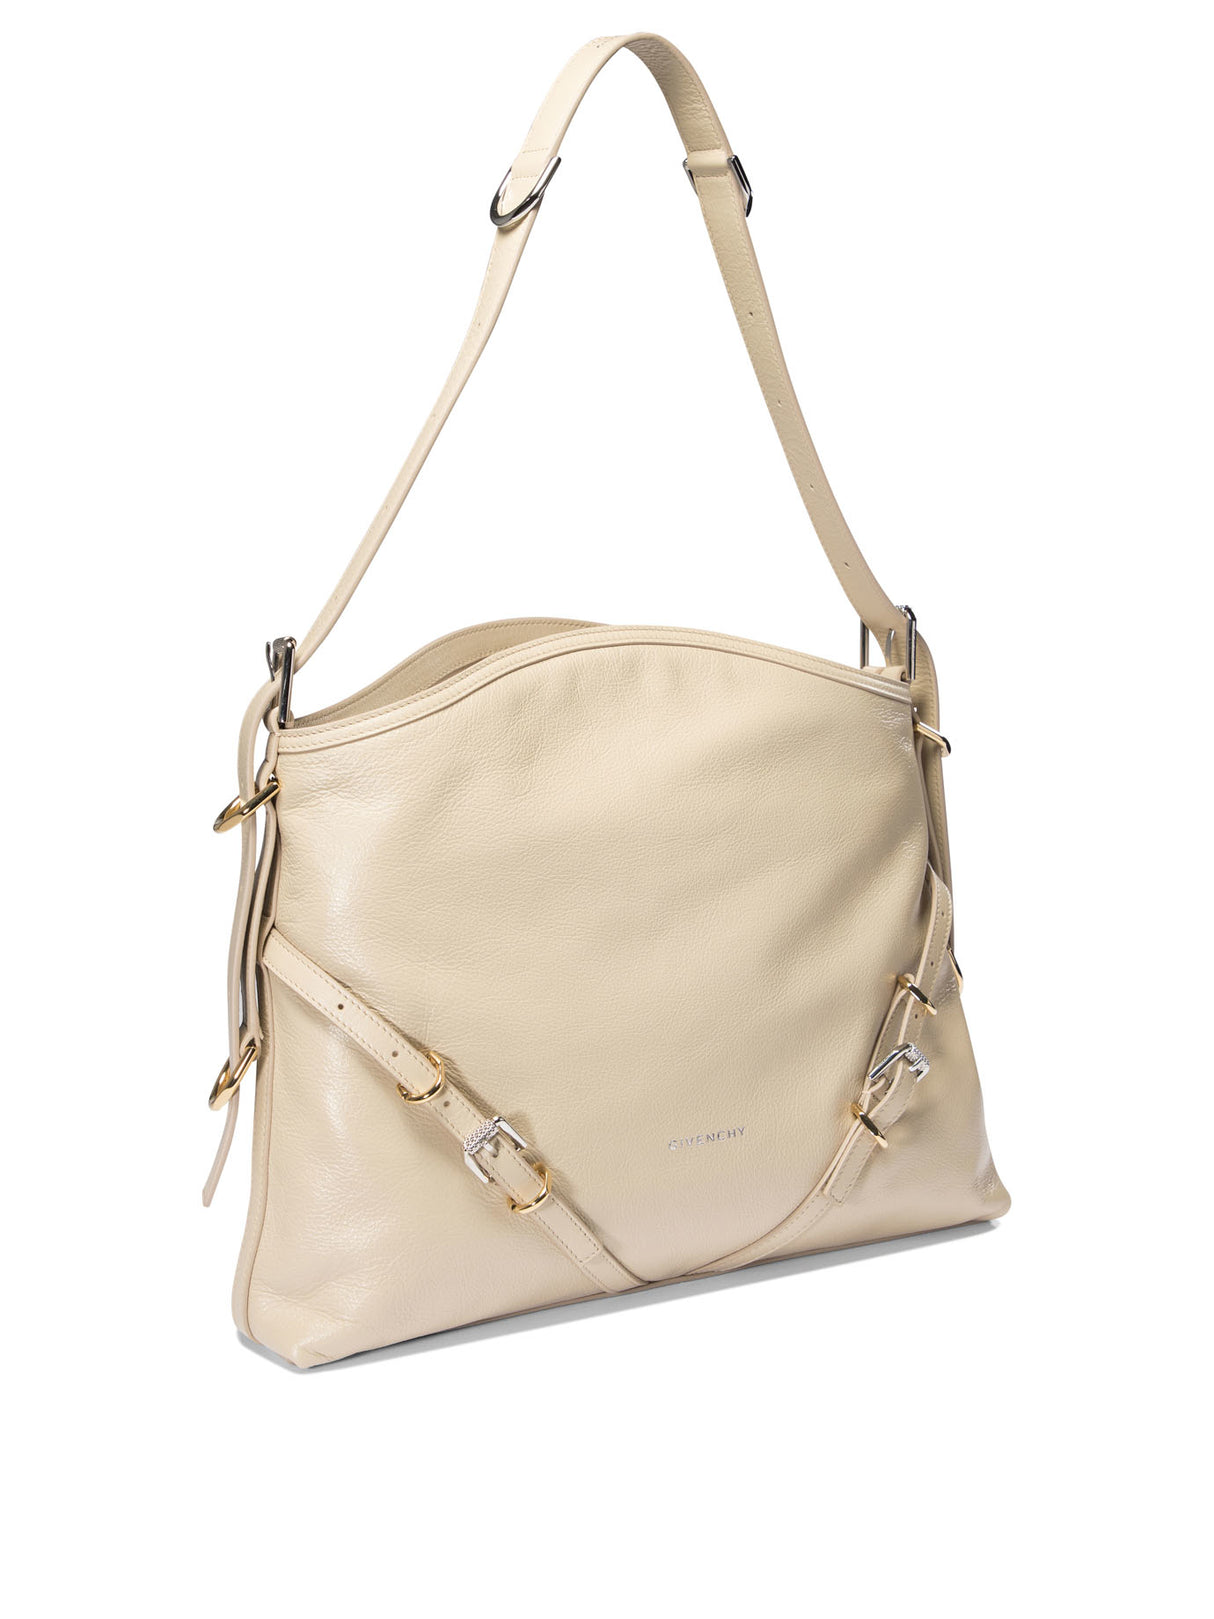 حقيبة كتف جلد بلون بني متوسطة الحجم بحزام متعدد الاستخدامات، 40x27x6.5 سم